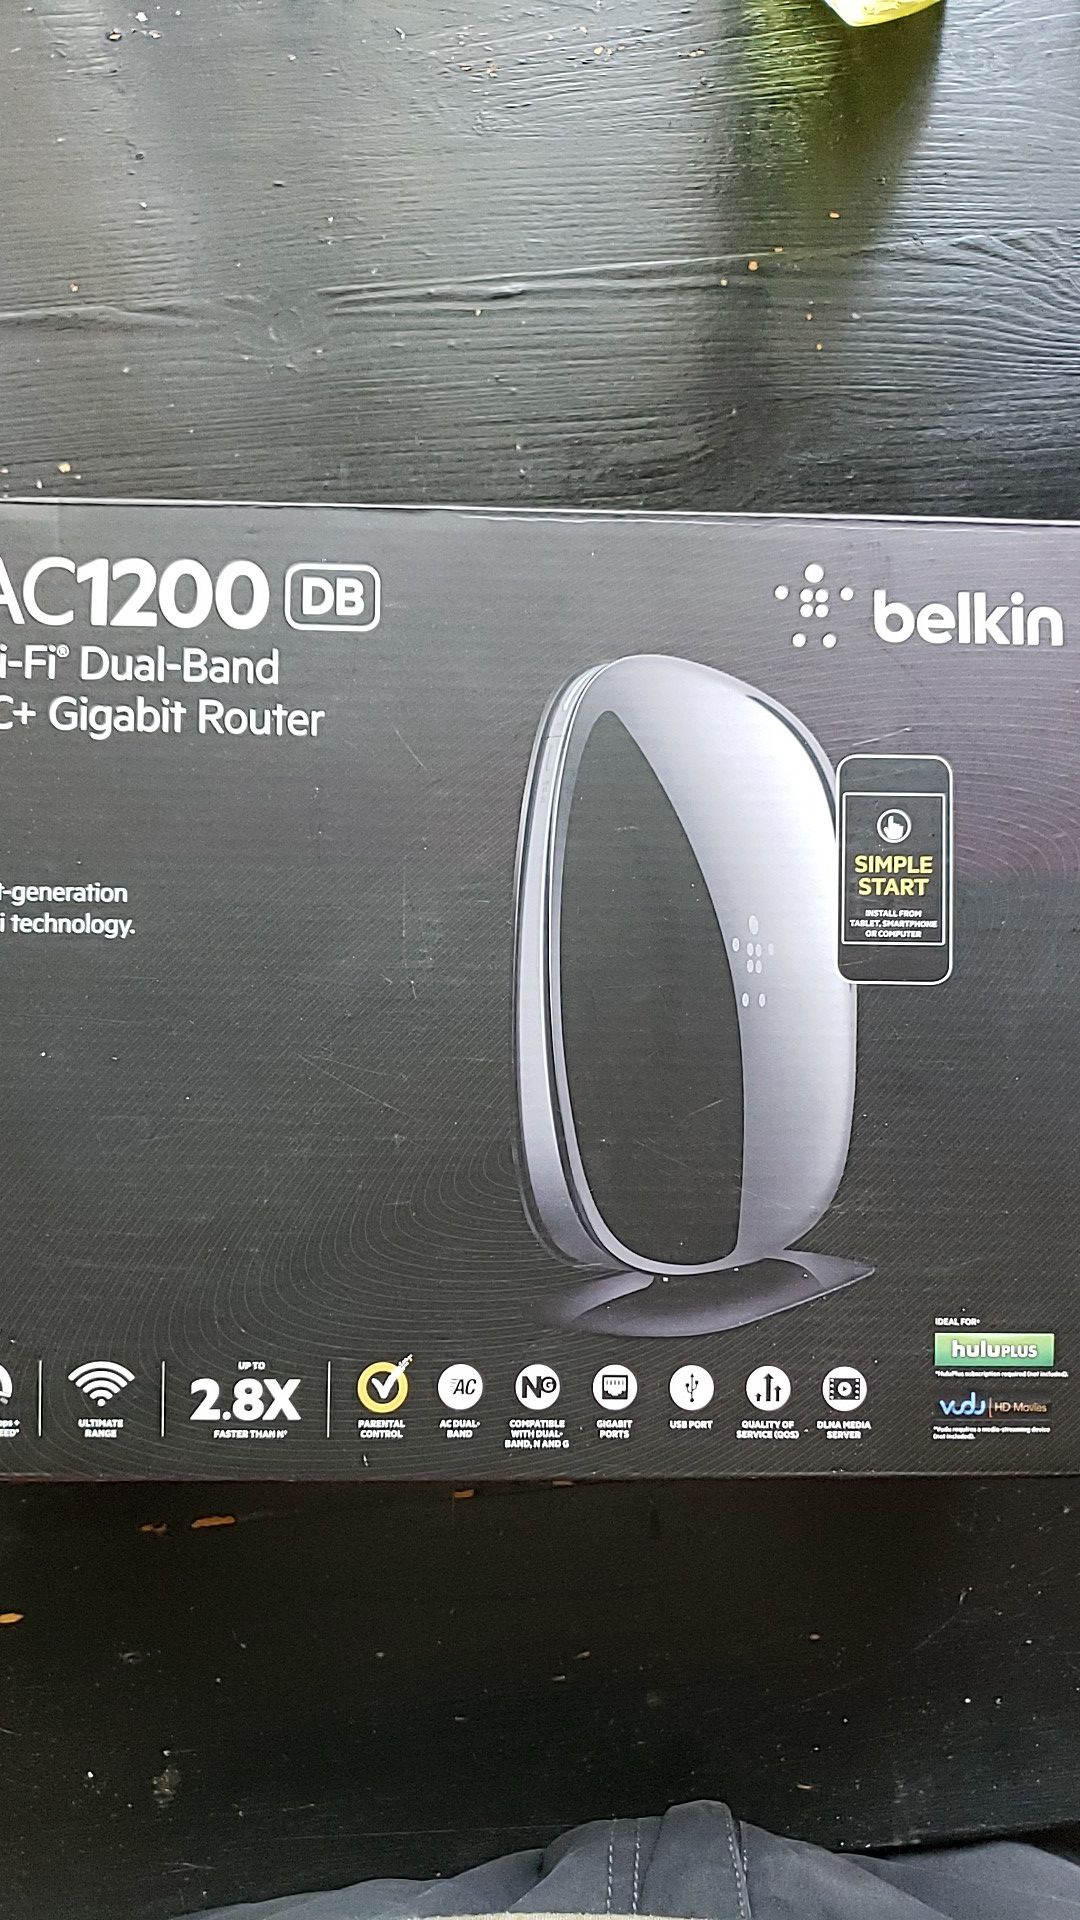 Belkin AC1200 Wireless Dualband Router.